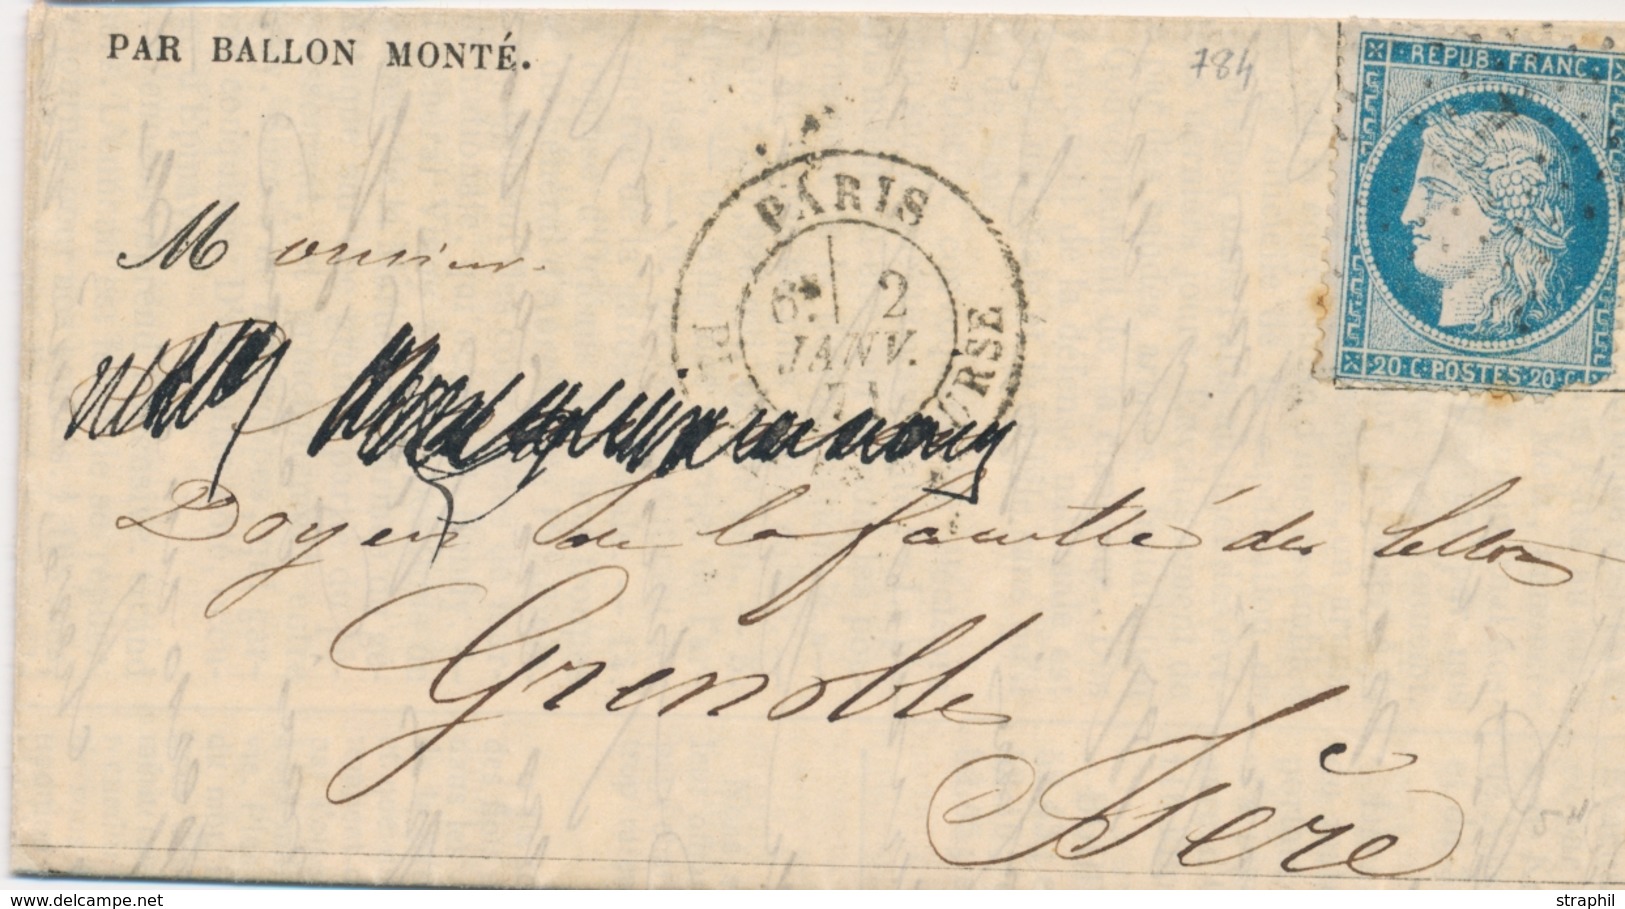 LAC BALLONS MONTES - LAC - LE NEWTON - Gazette Absents N°21 - Etoile Sur N°37 (défect.) - CàD Paris Place De La Bourse 2 - War 1870